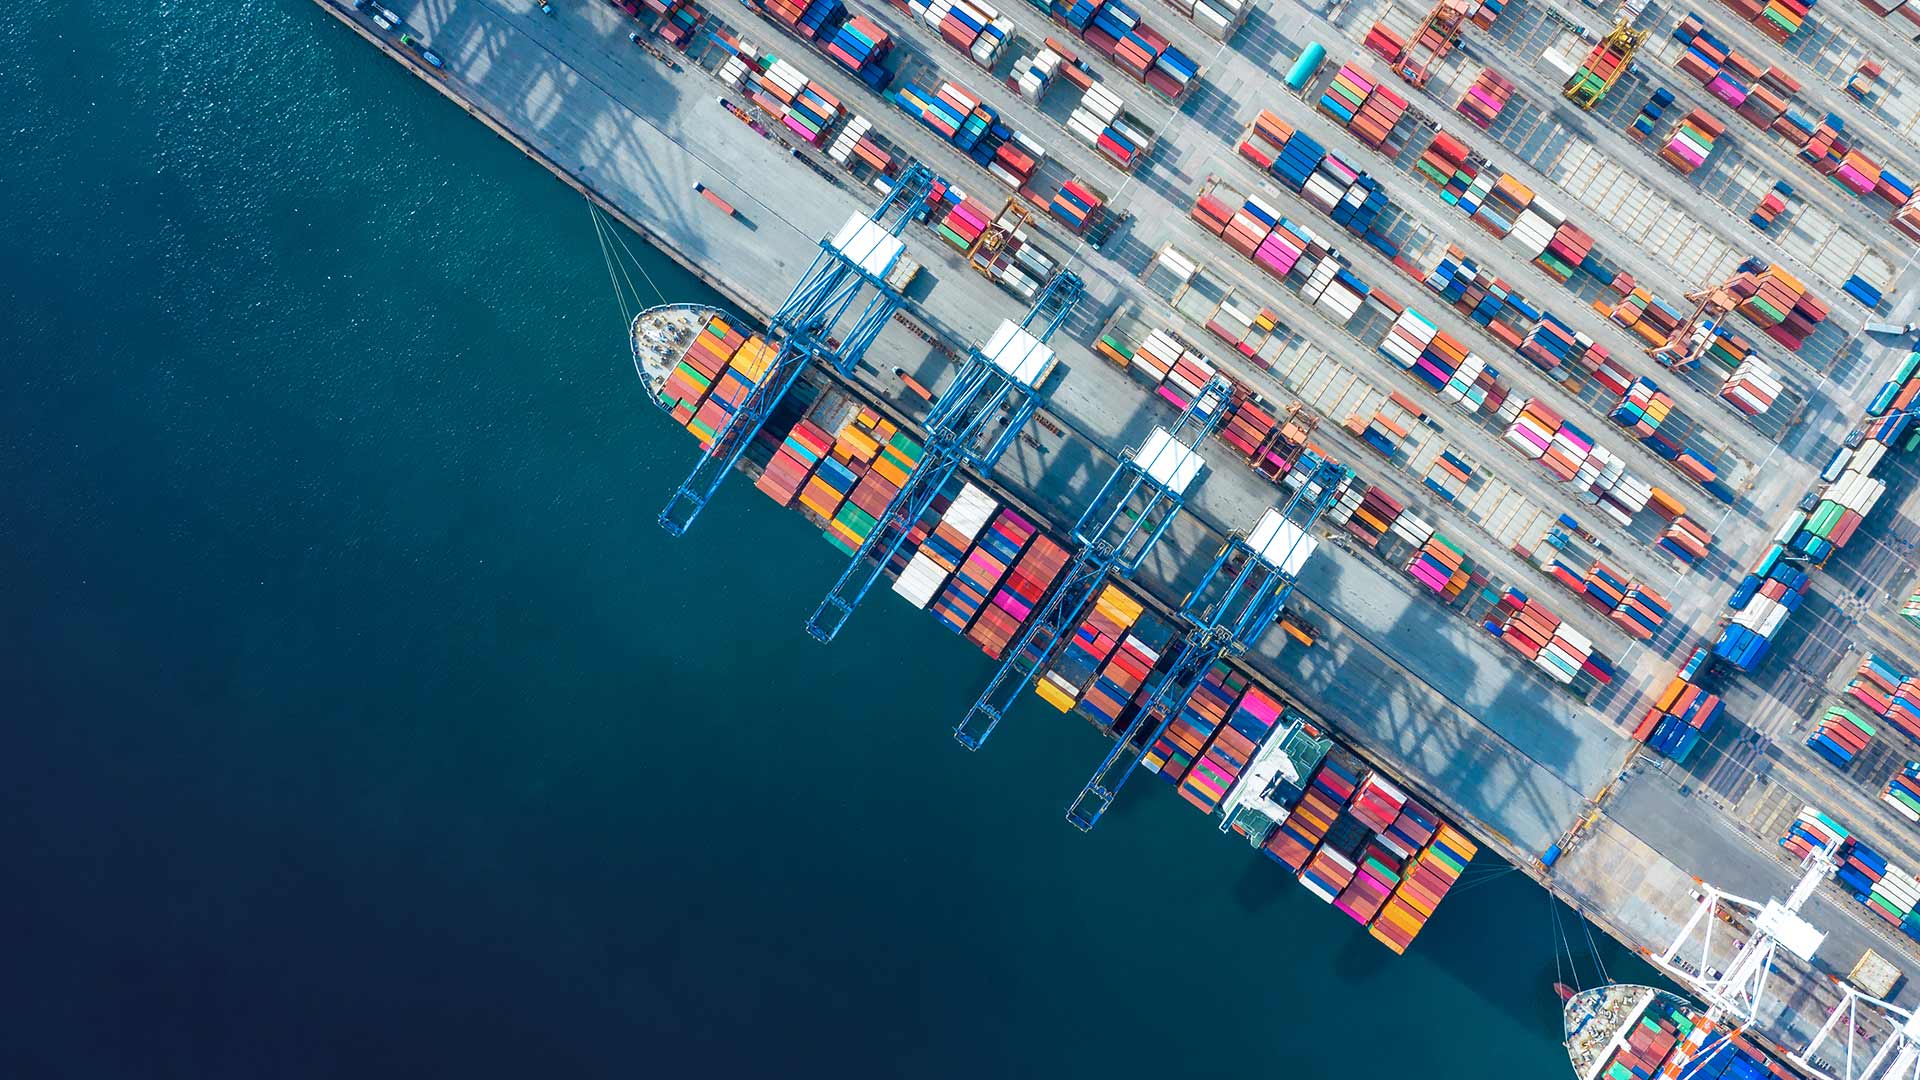 Bild: Perspektive von oben auf ein Containerschiff im Hafen 